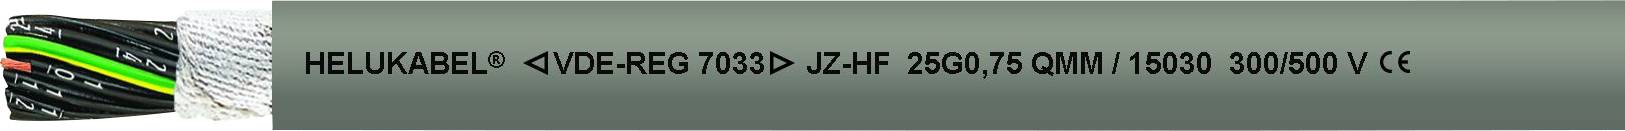 HELUKABEL 15143-1000 Schleppkettenleitung JZ-HF 4 G 4.00 mm² Grau 1000 m